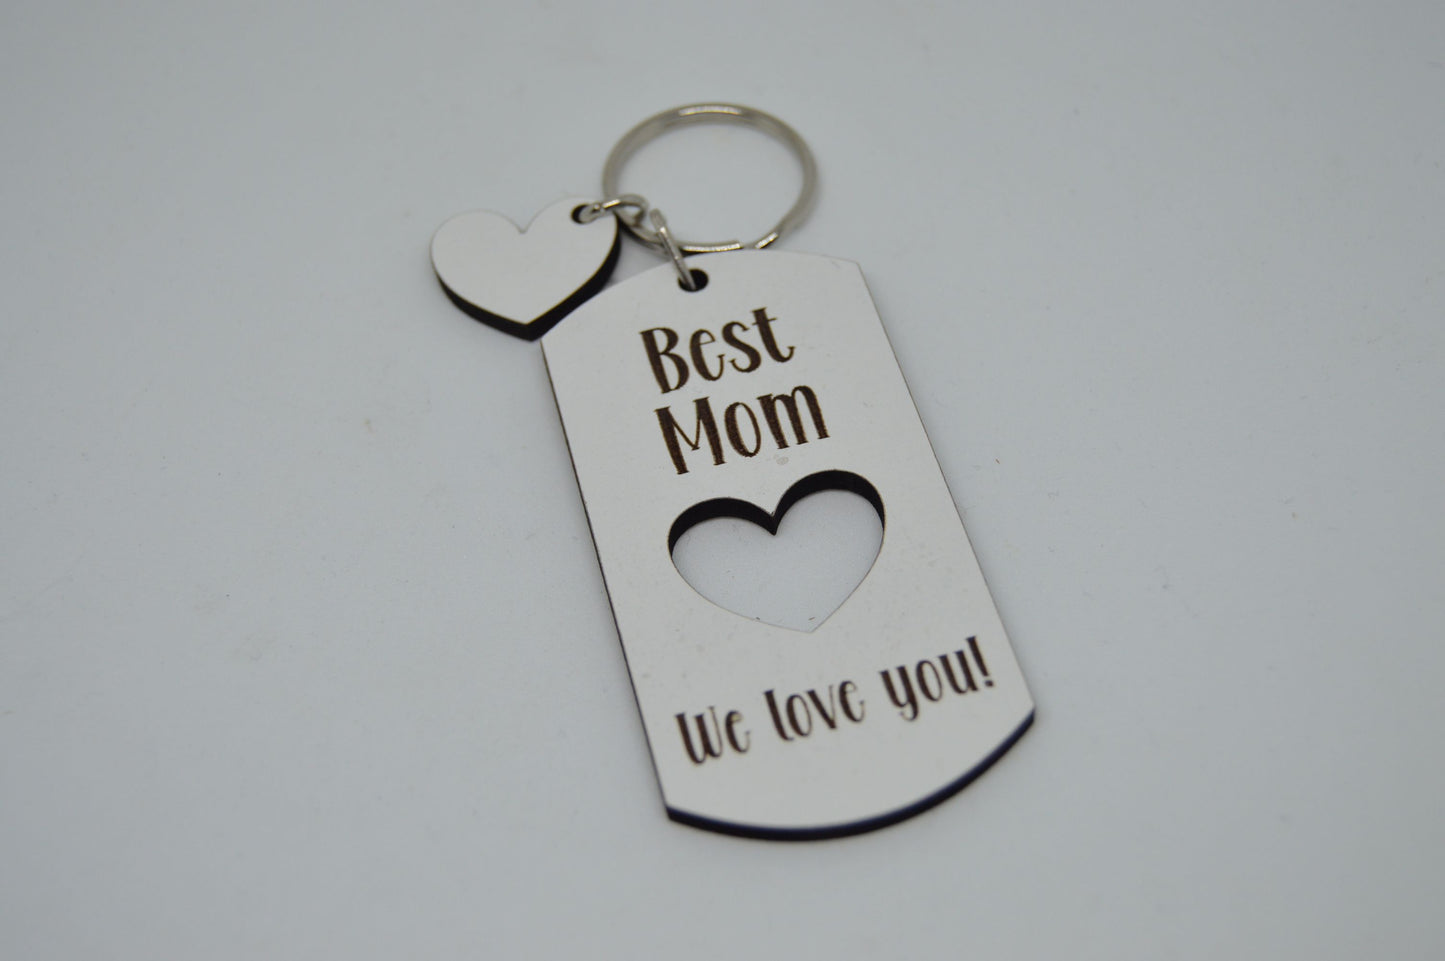 Keyring - Best mom, We love you